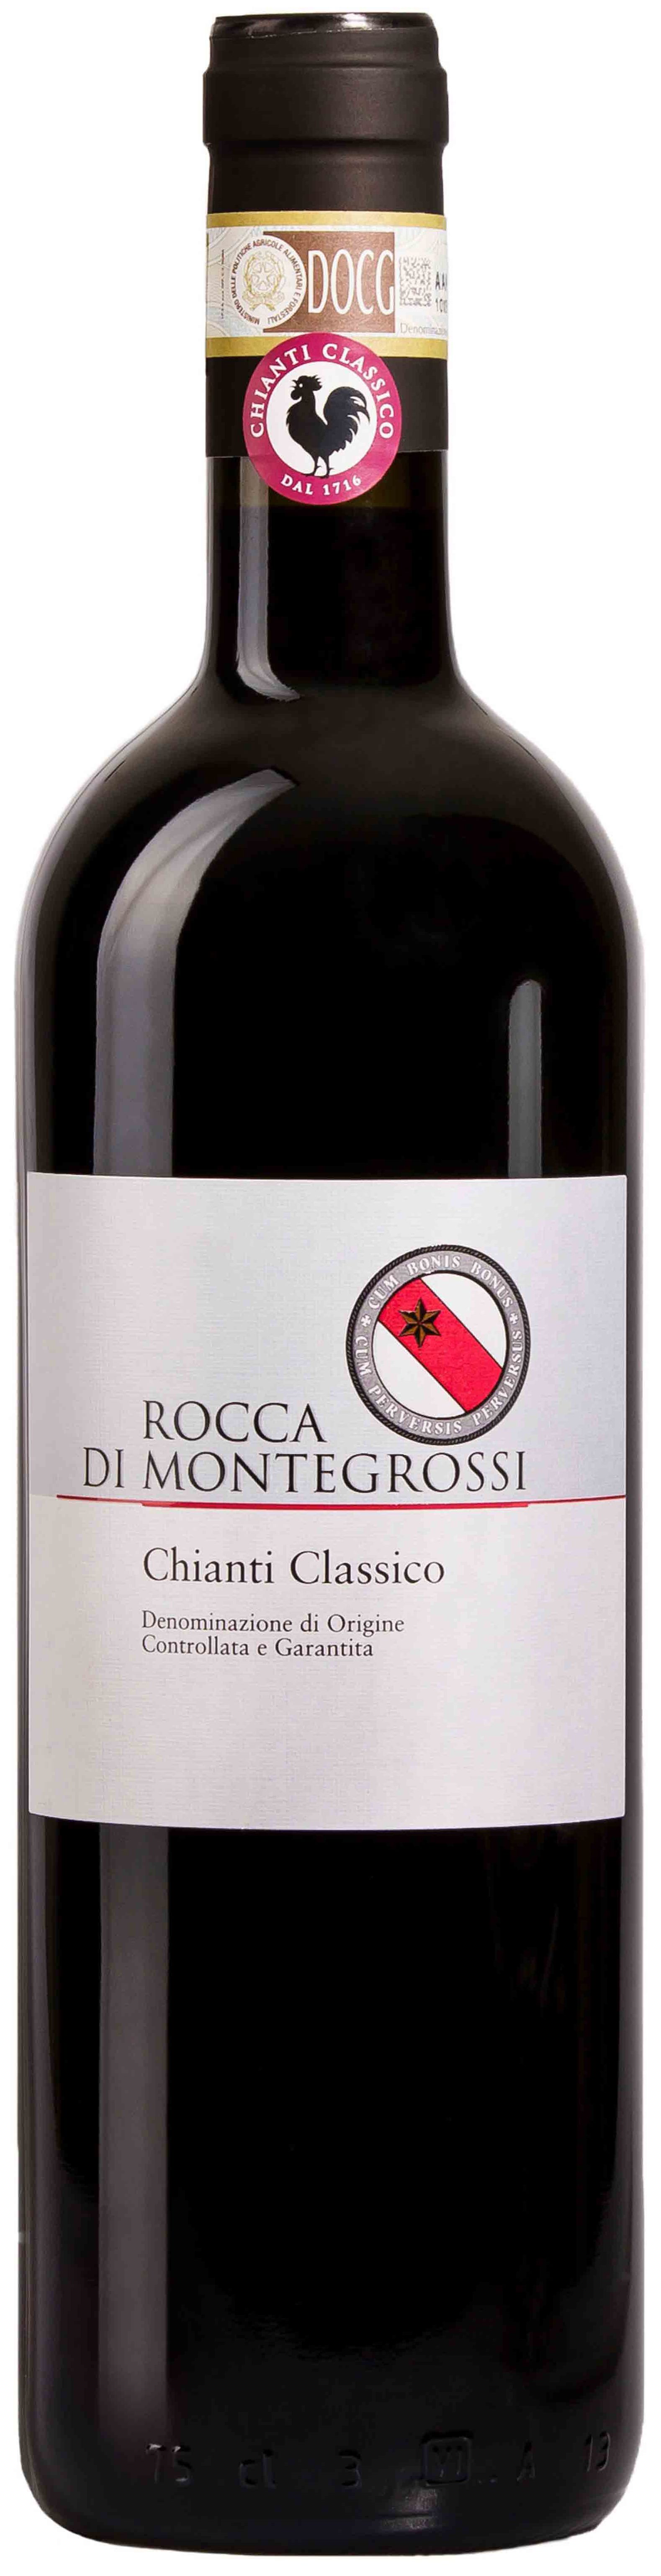 Rocca Di Montegrossi, Chianti Classico, 2018